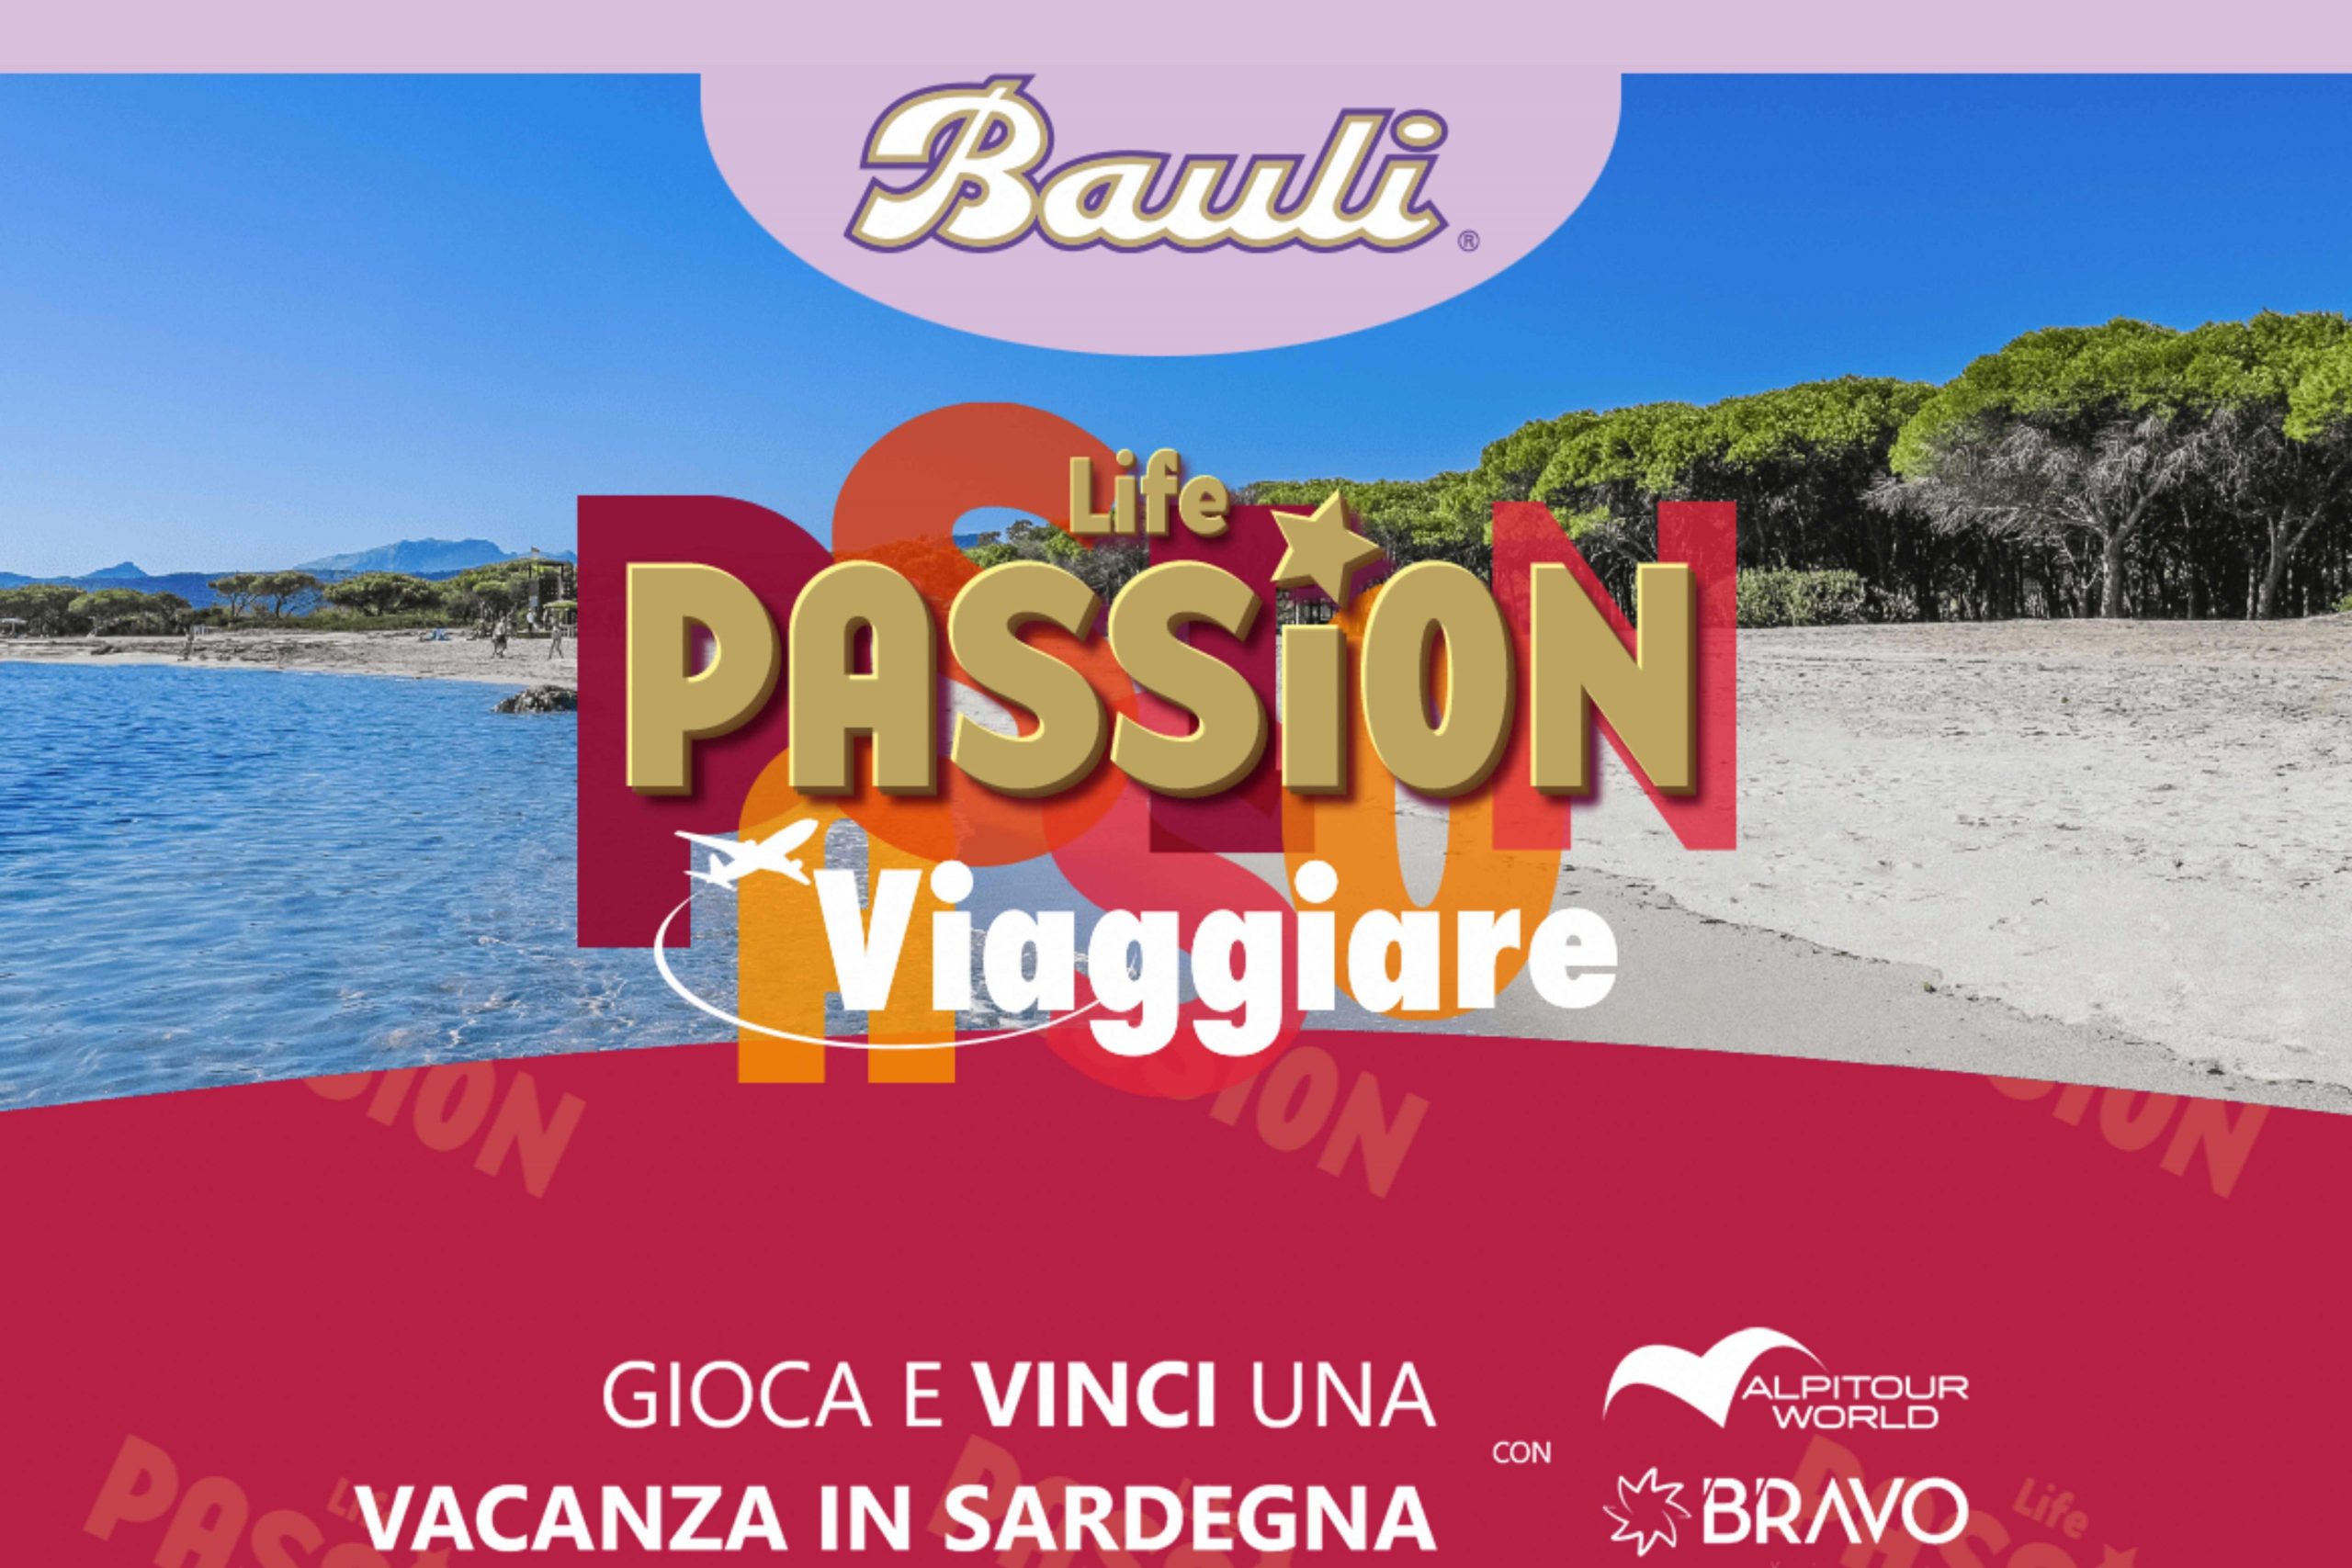 Concorso “Life Passion” by Bauli: come vincere una vacanza in Sardegna